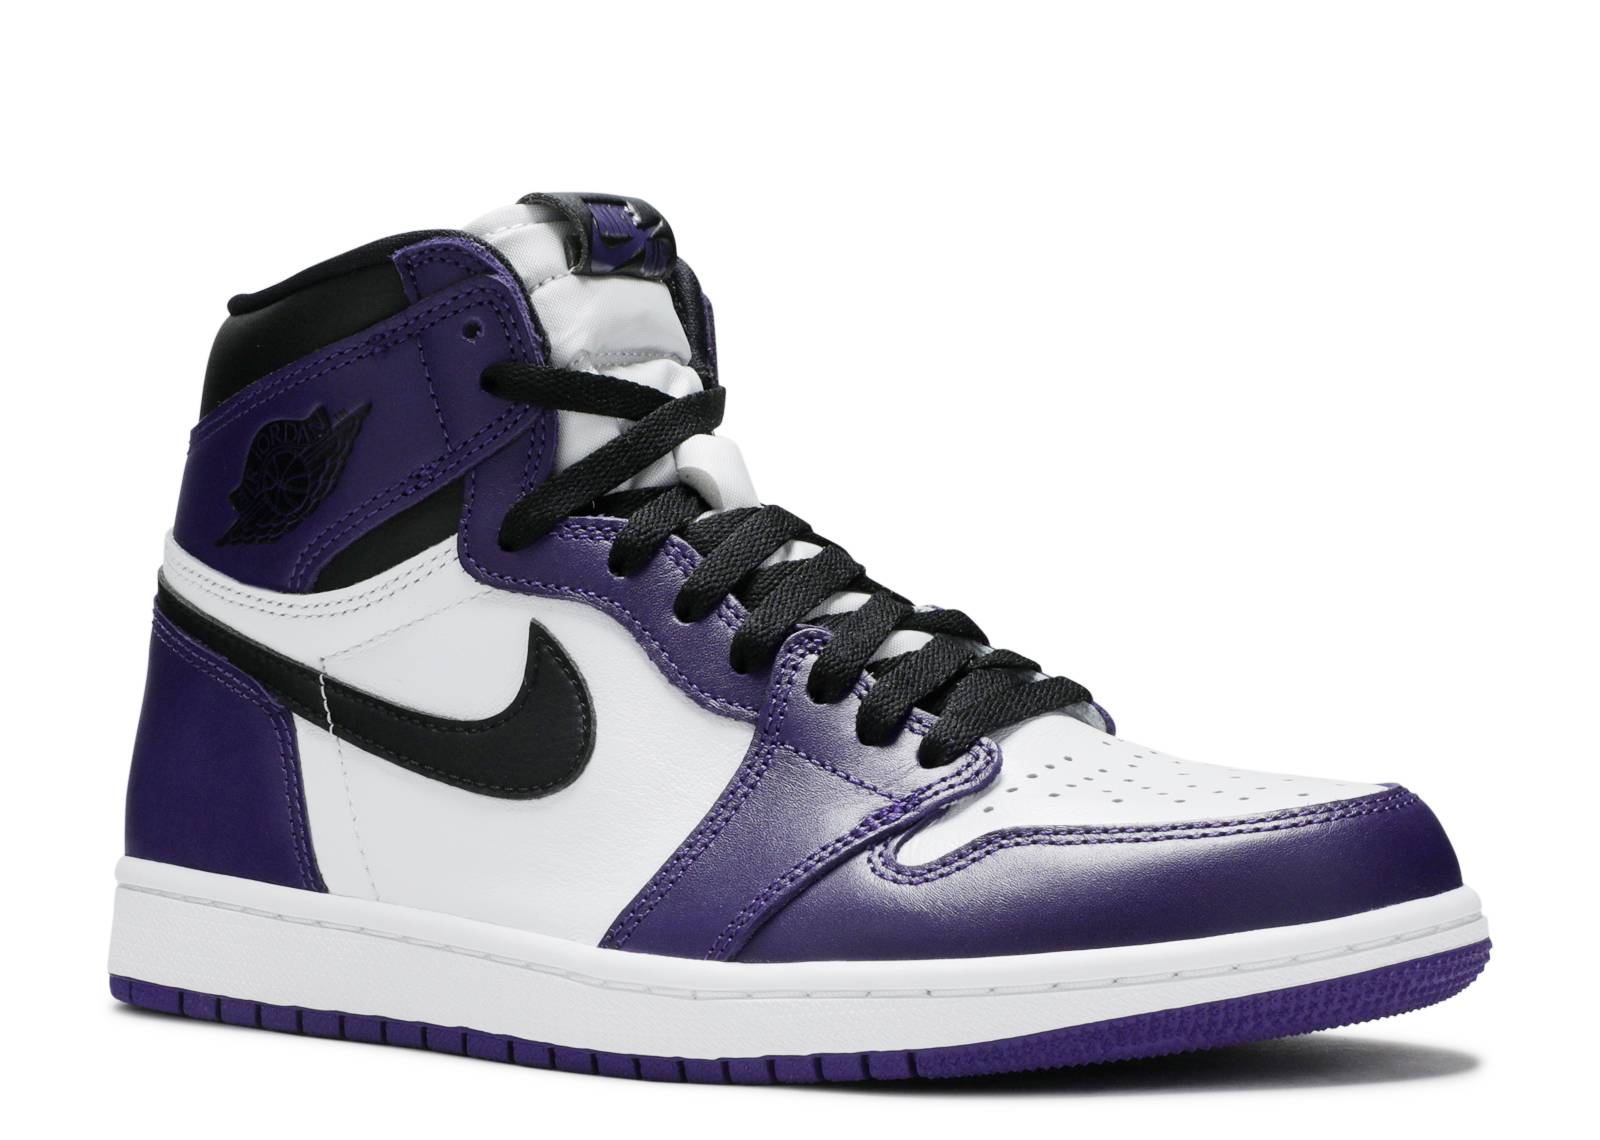 Air Jordan 1 High OG Court Purple